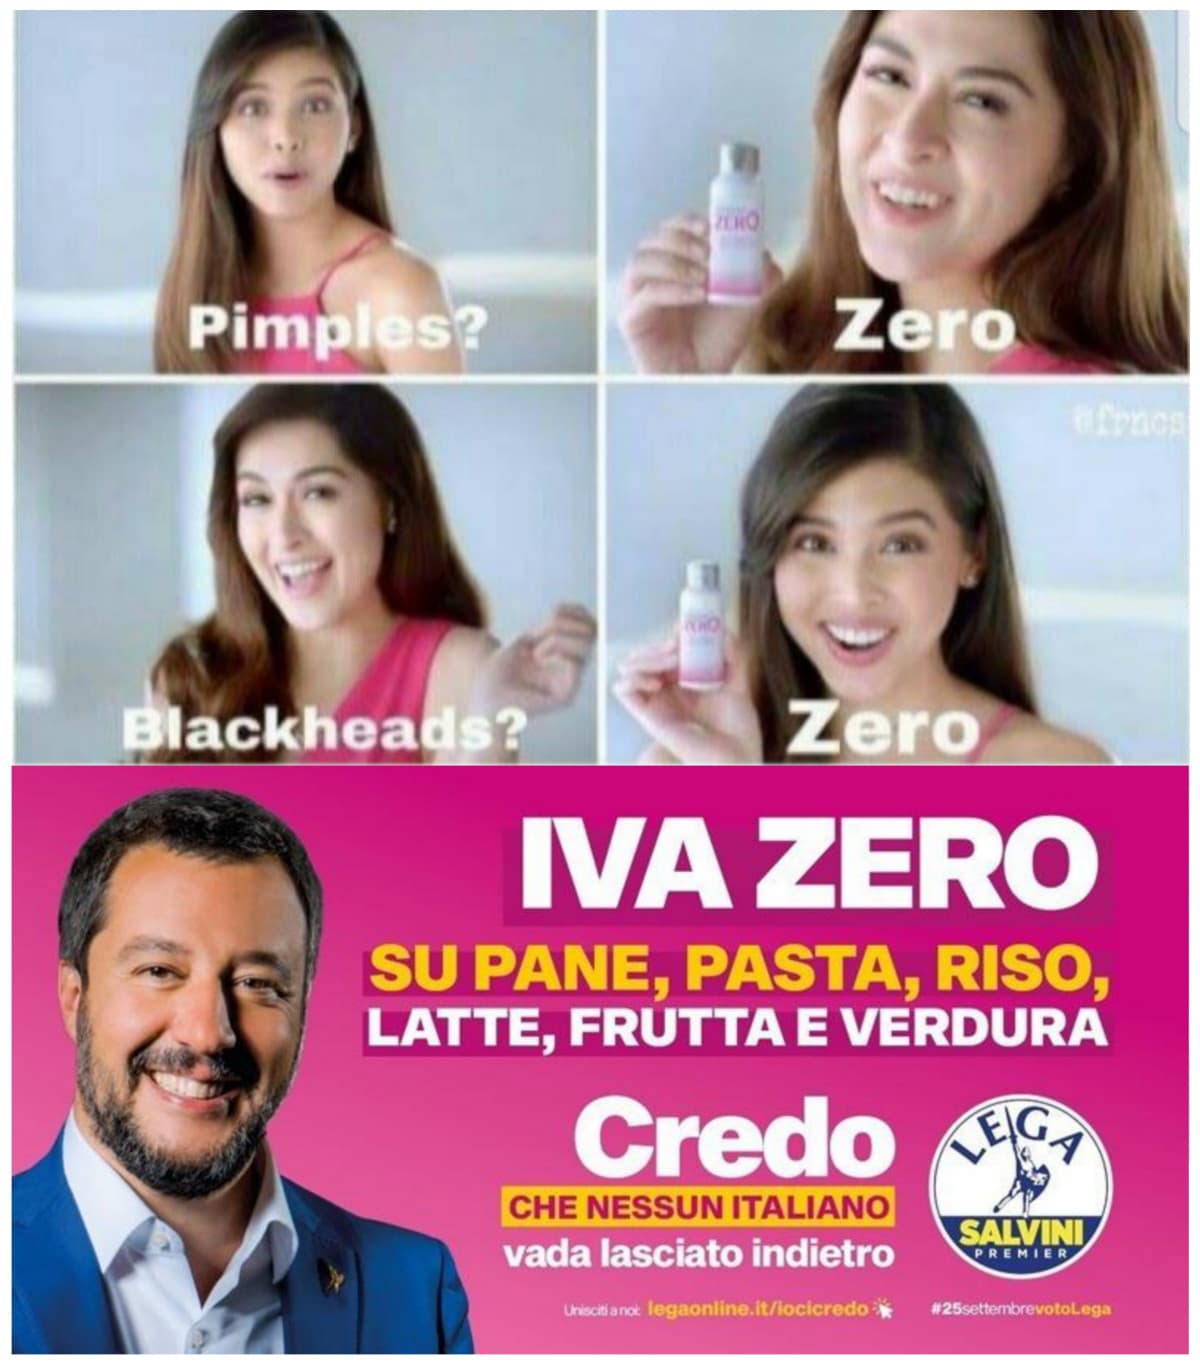 Rivelazione shock: Salvini è in realtà una donna asiatica.